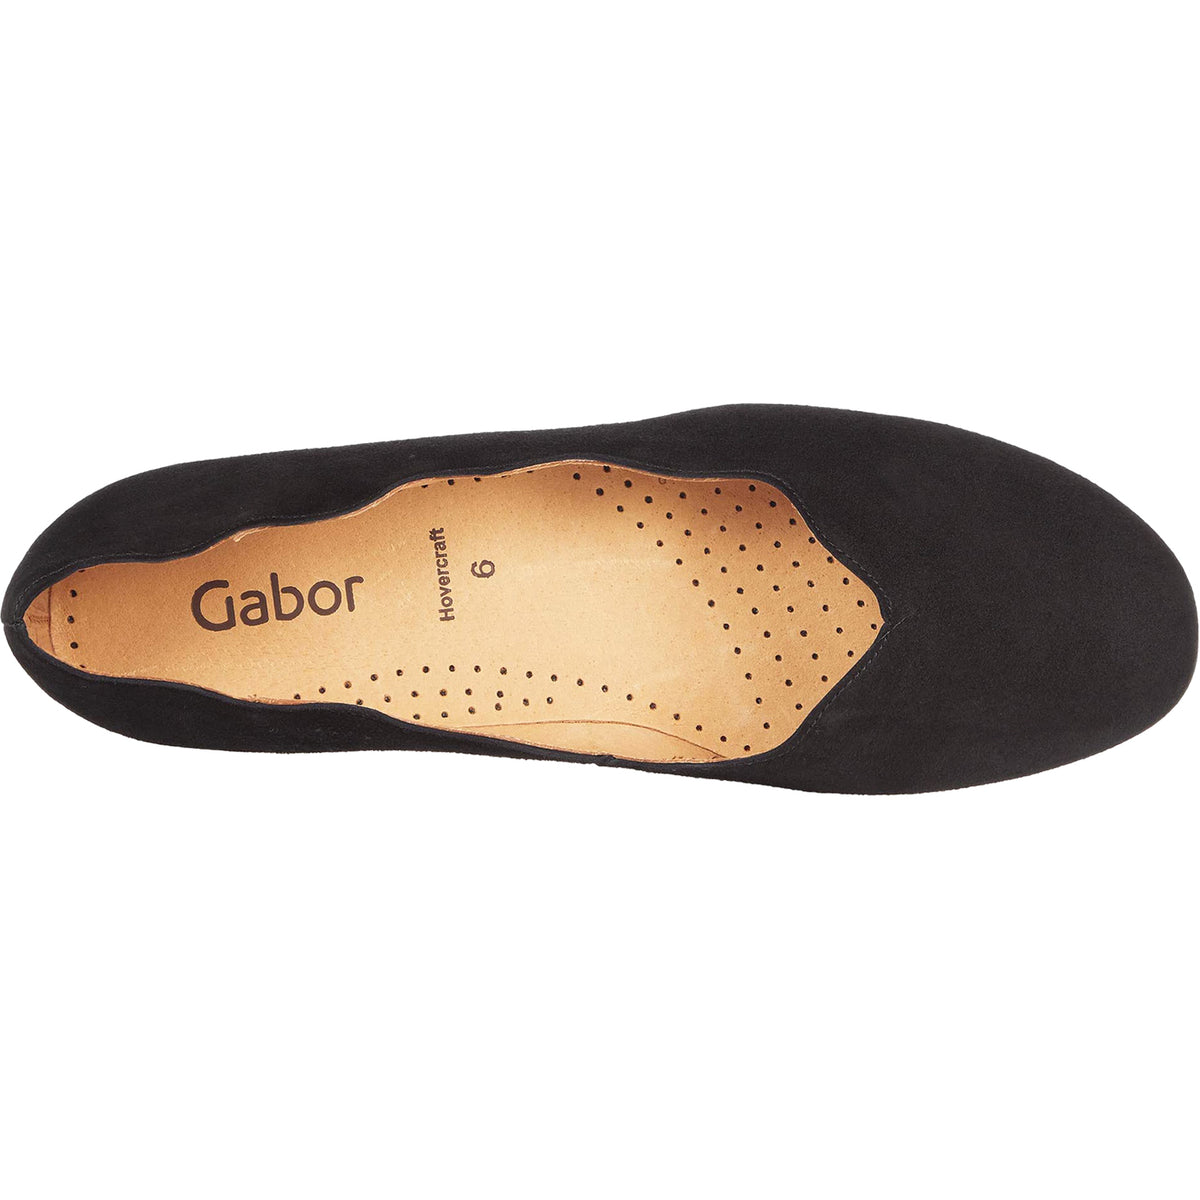 Gabor 64.166.17 | Women's Slip-On Flats | Footwear etc.